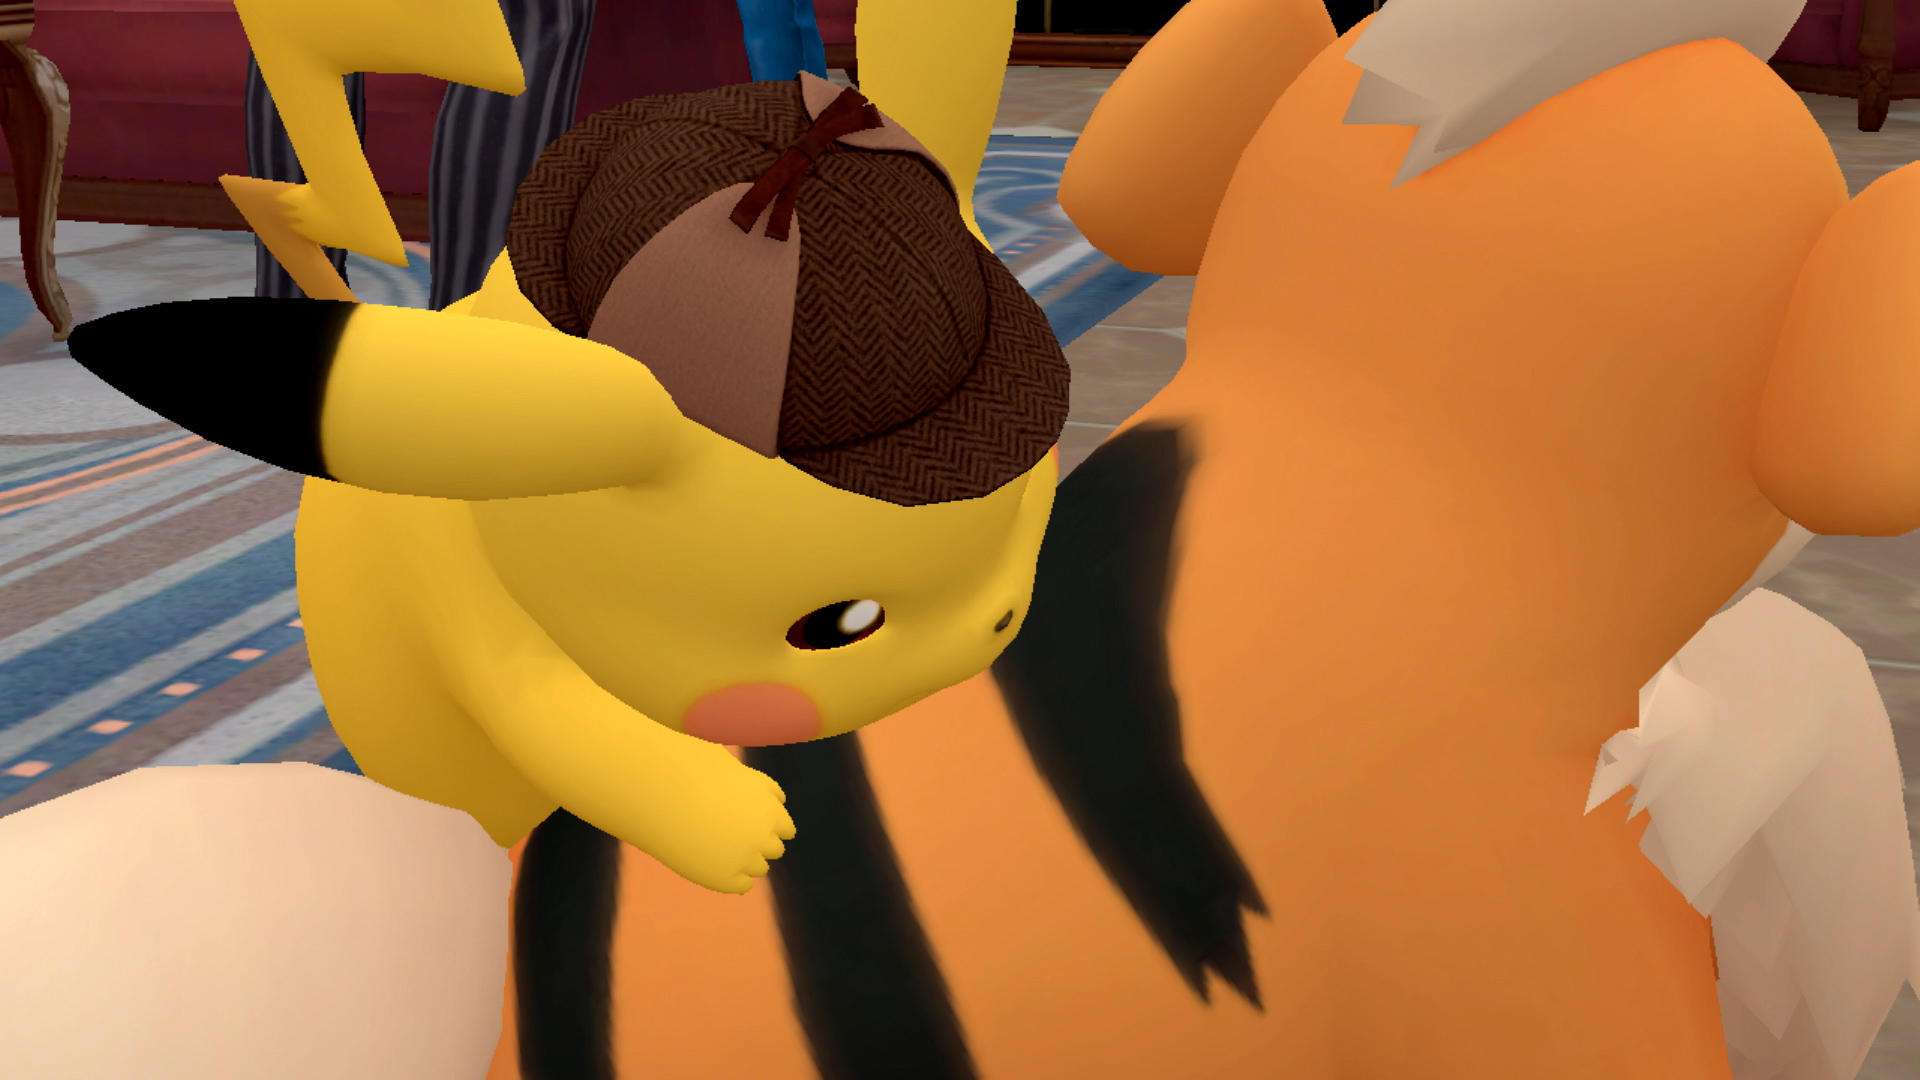 Il ritorno del detective Pikachu